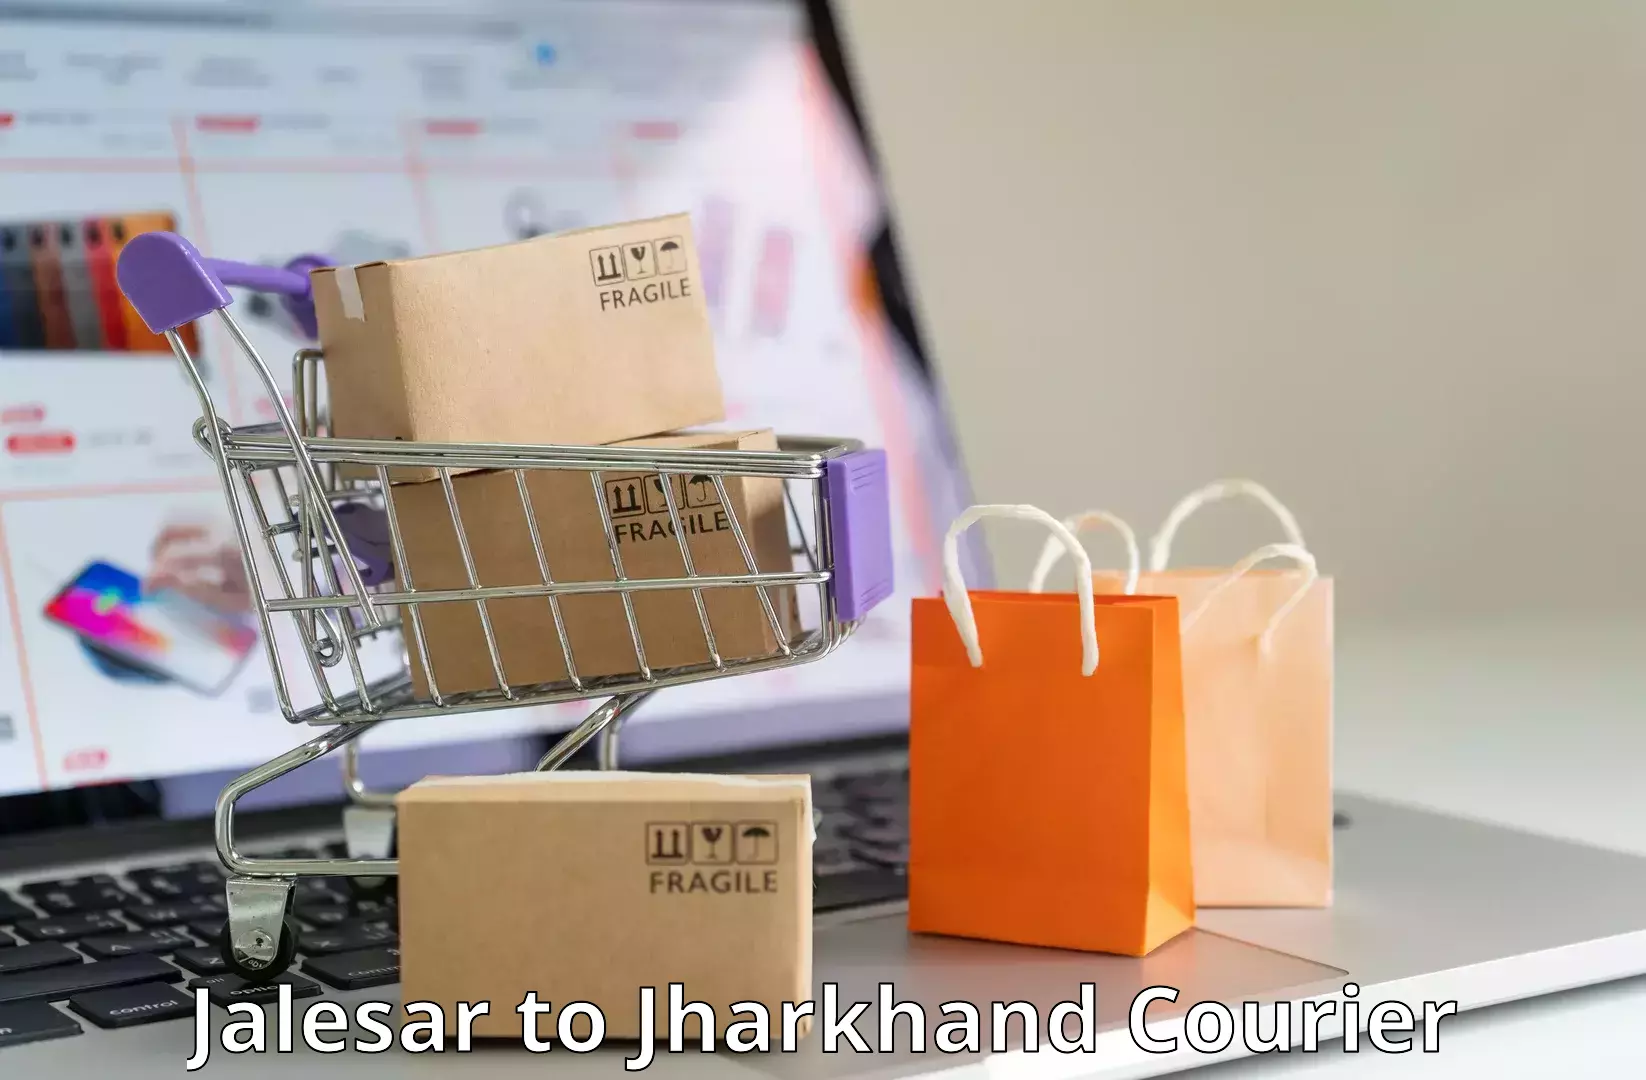 Cargo courier service Jalesar to Chakradharpur